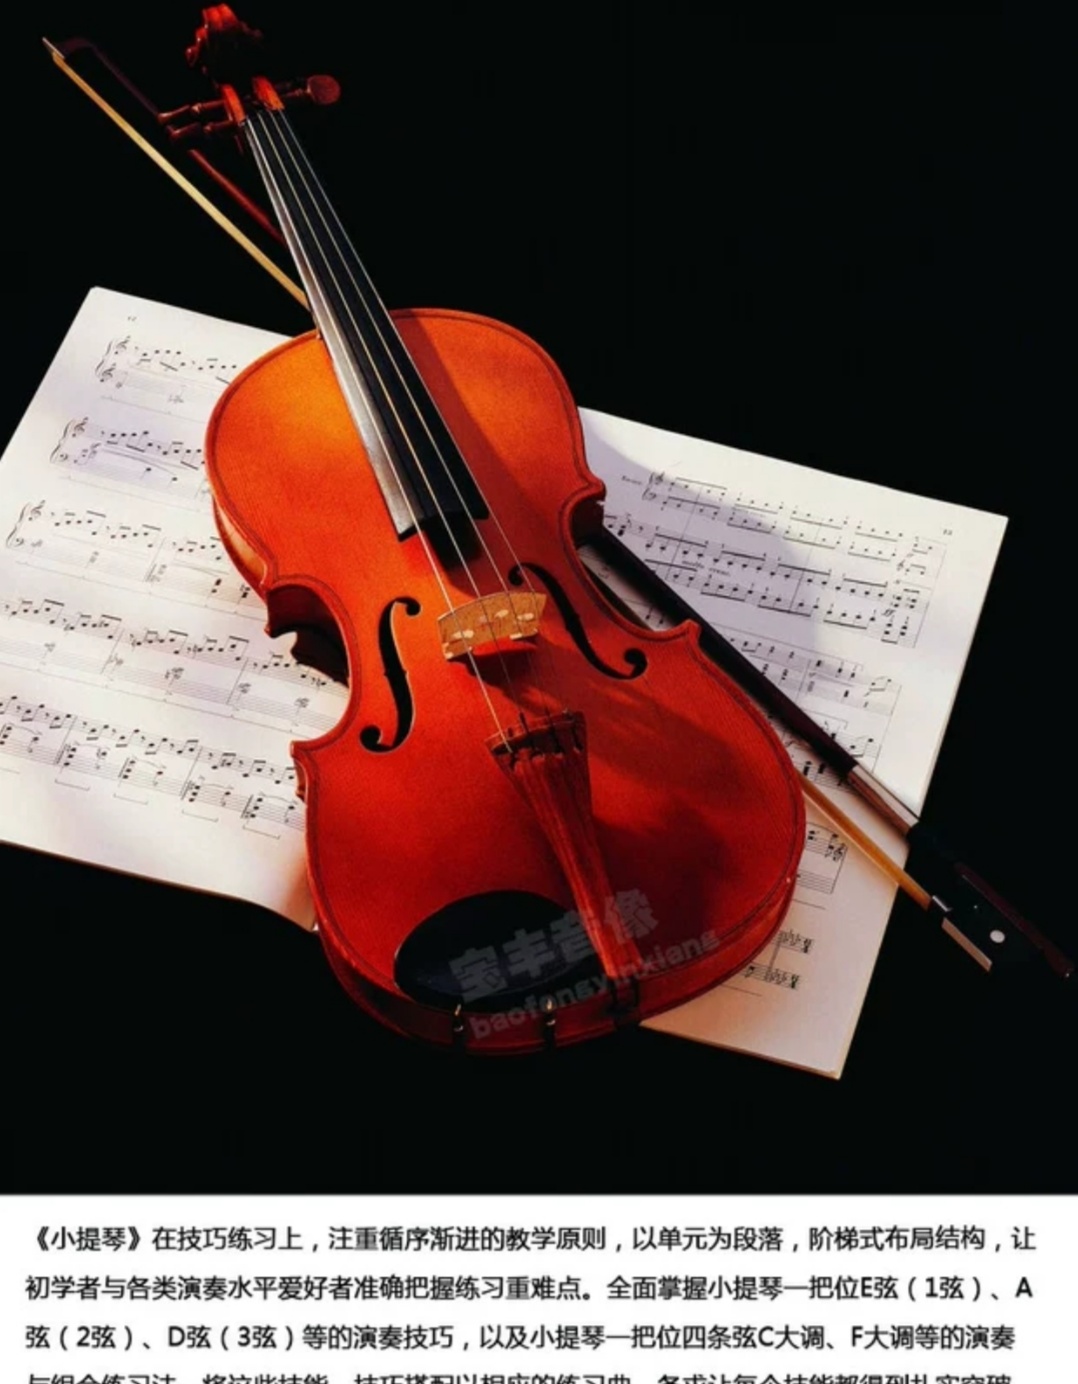 小提琴视频教程教学 自学零基础入门学习课程 音阶教程 铃木小提琴视频教程 儿童版 成人版教程 涵盖全面